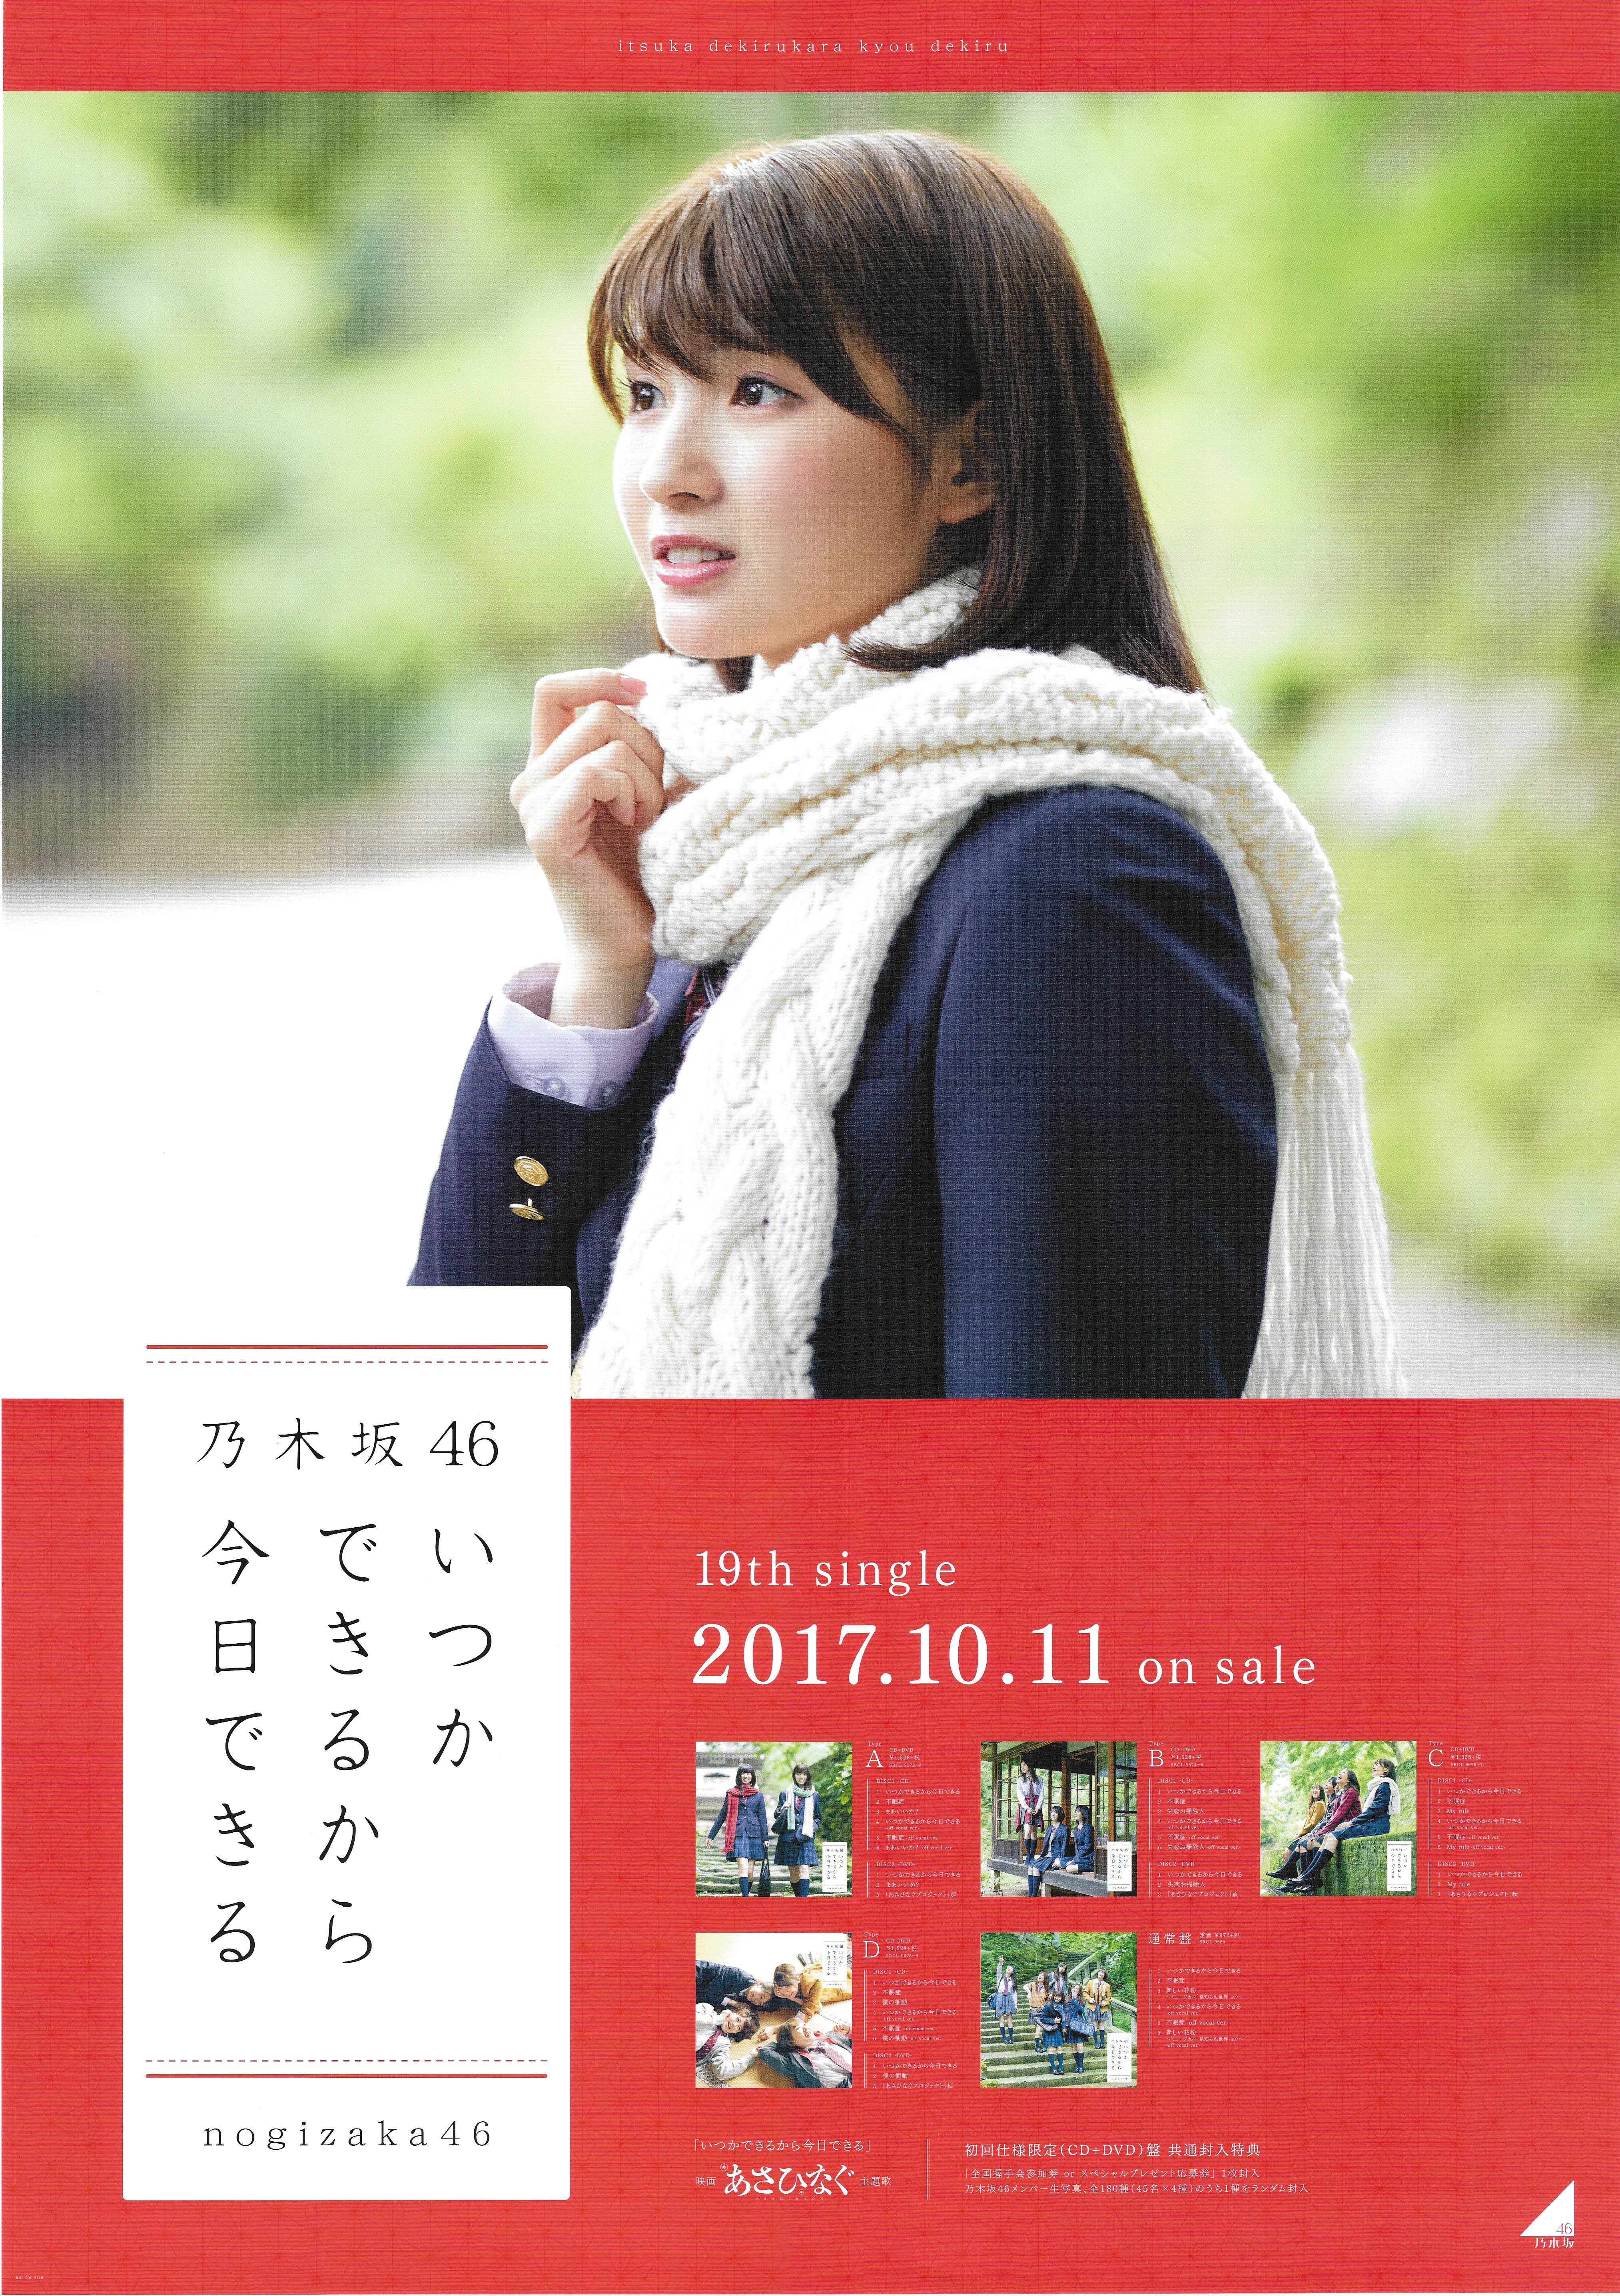 乃木坂46 ポスター 大人のカフェ 井上小百合 - 女性アイドル